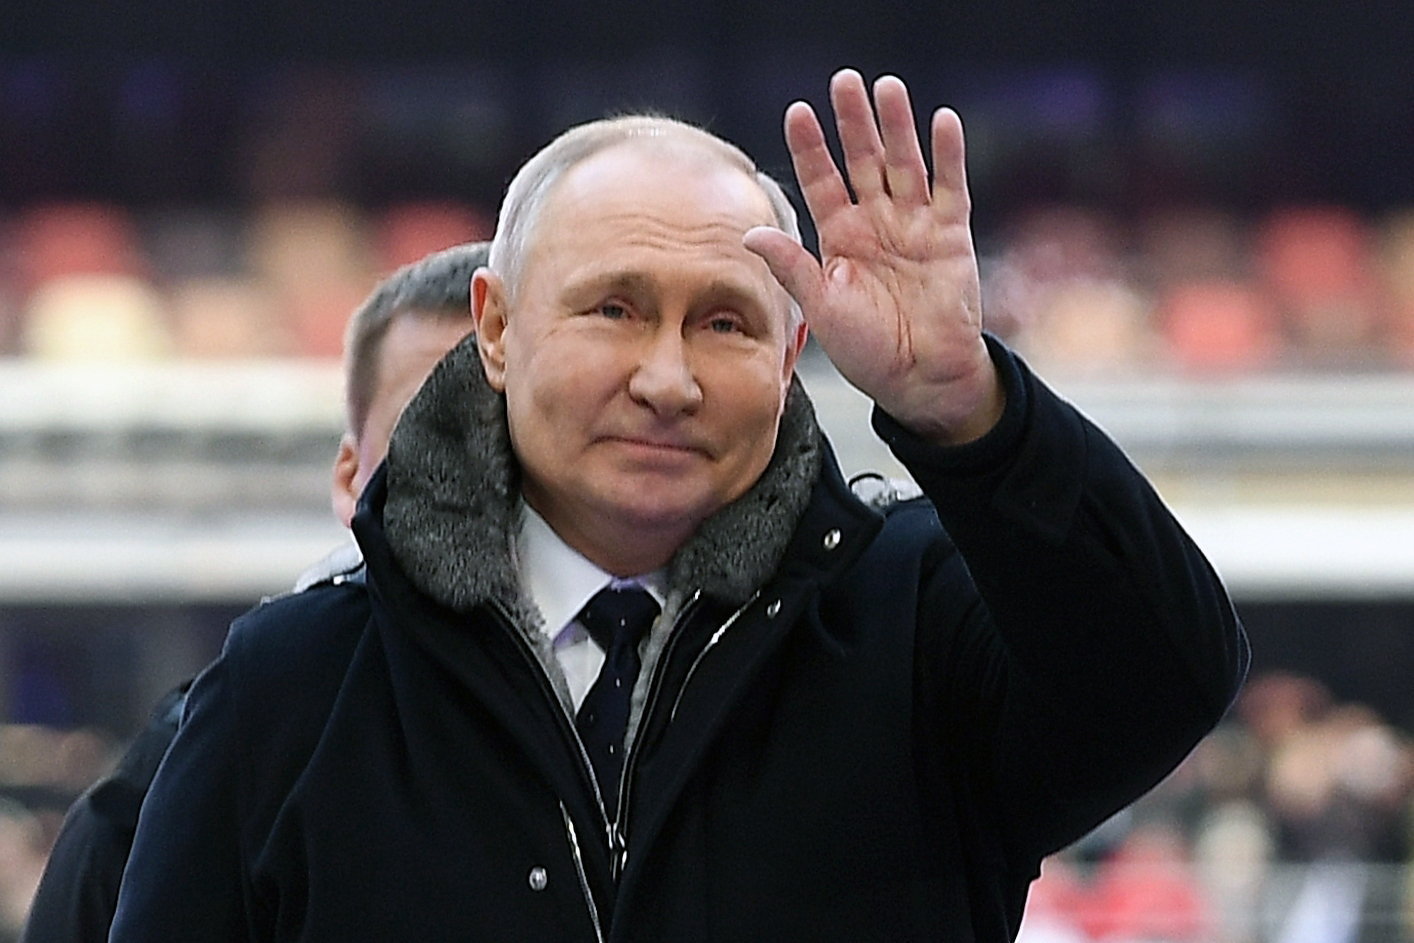 Putyin titkos palotájában minden csupa arany, csillogás